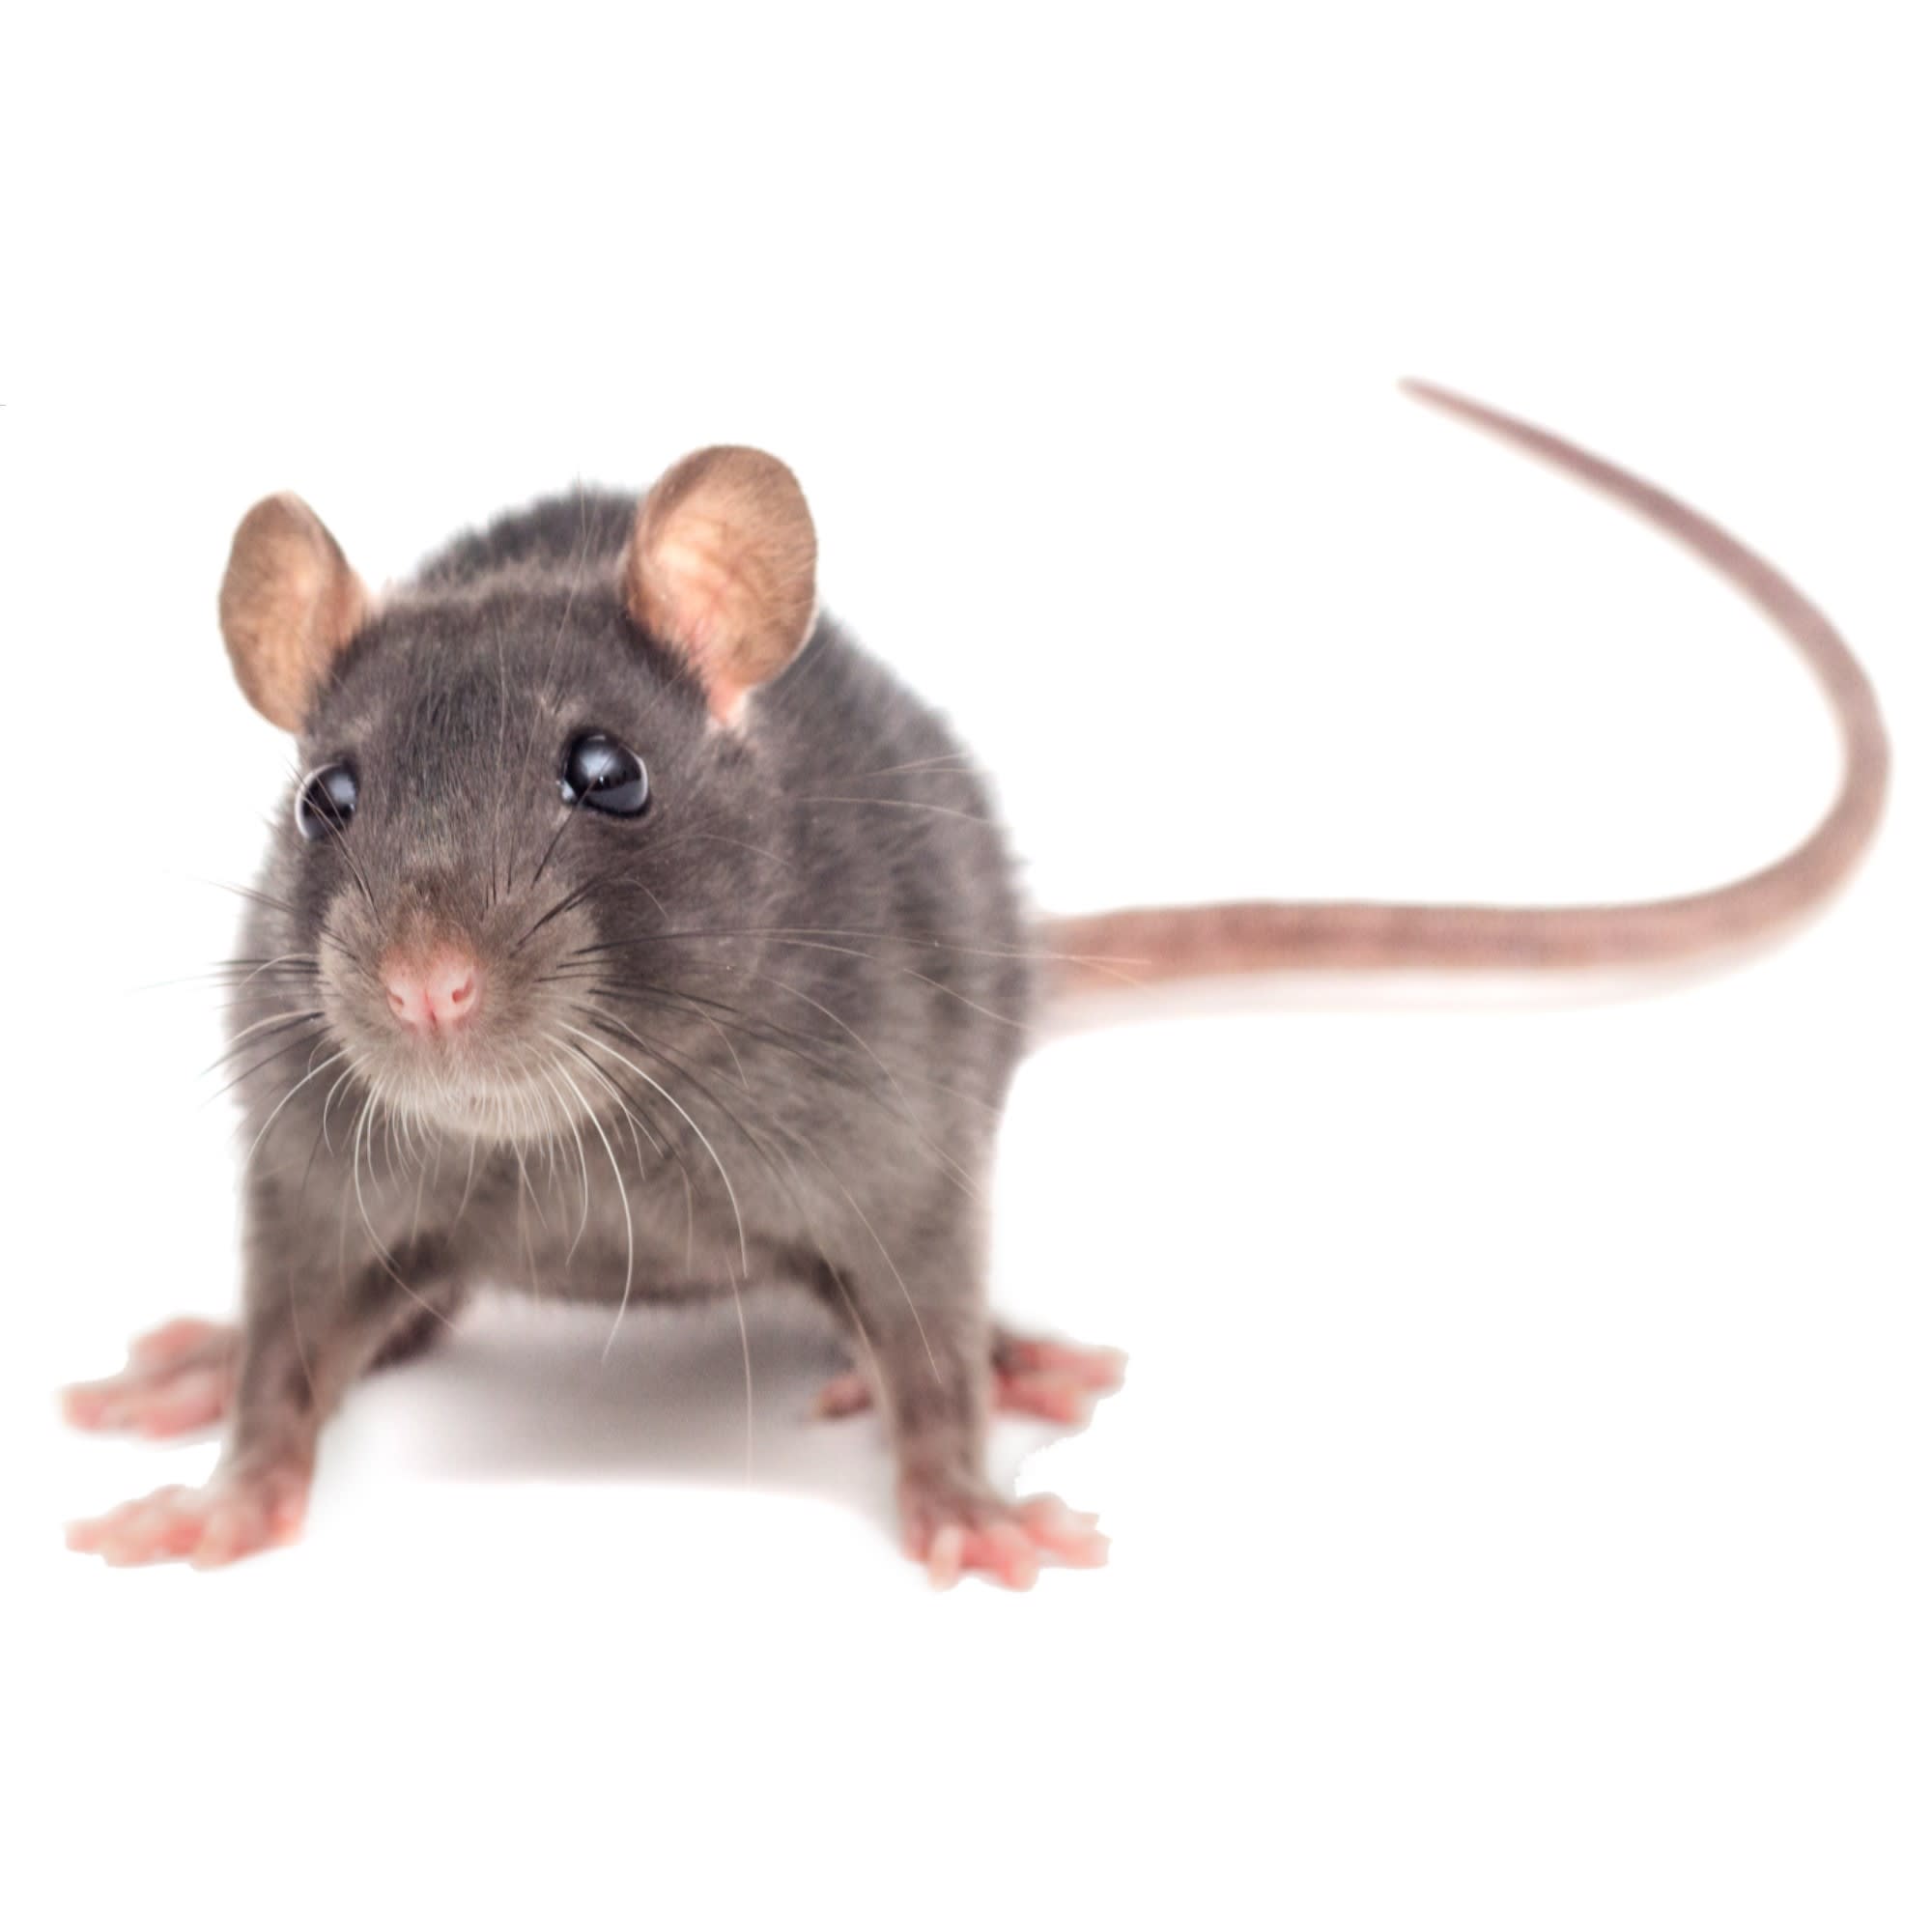 Rats For Sale, Live Pet Rats For Sale, Petco